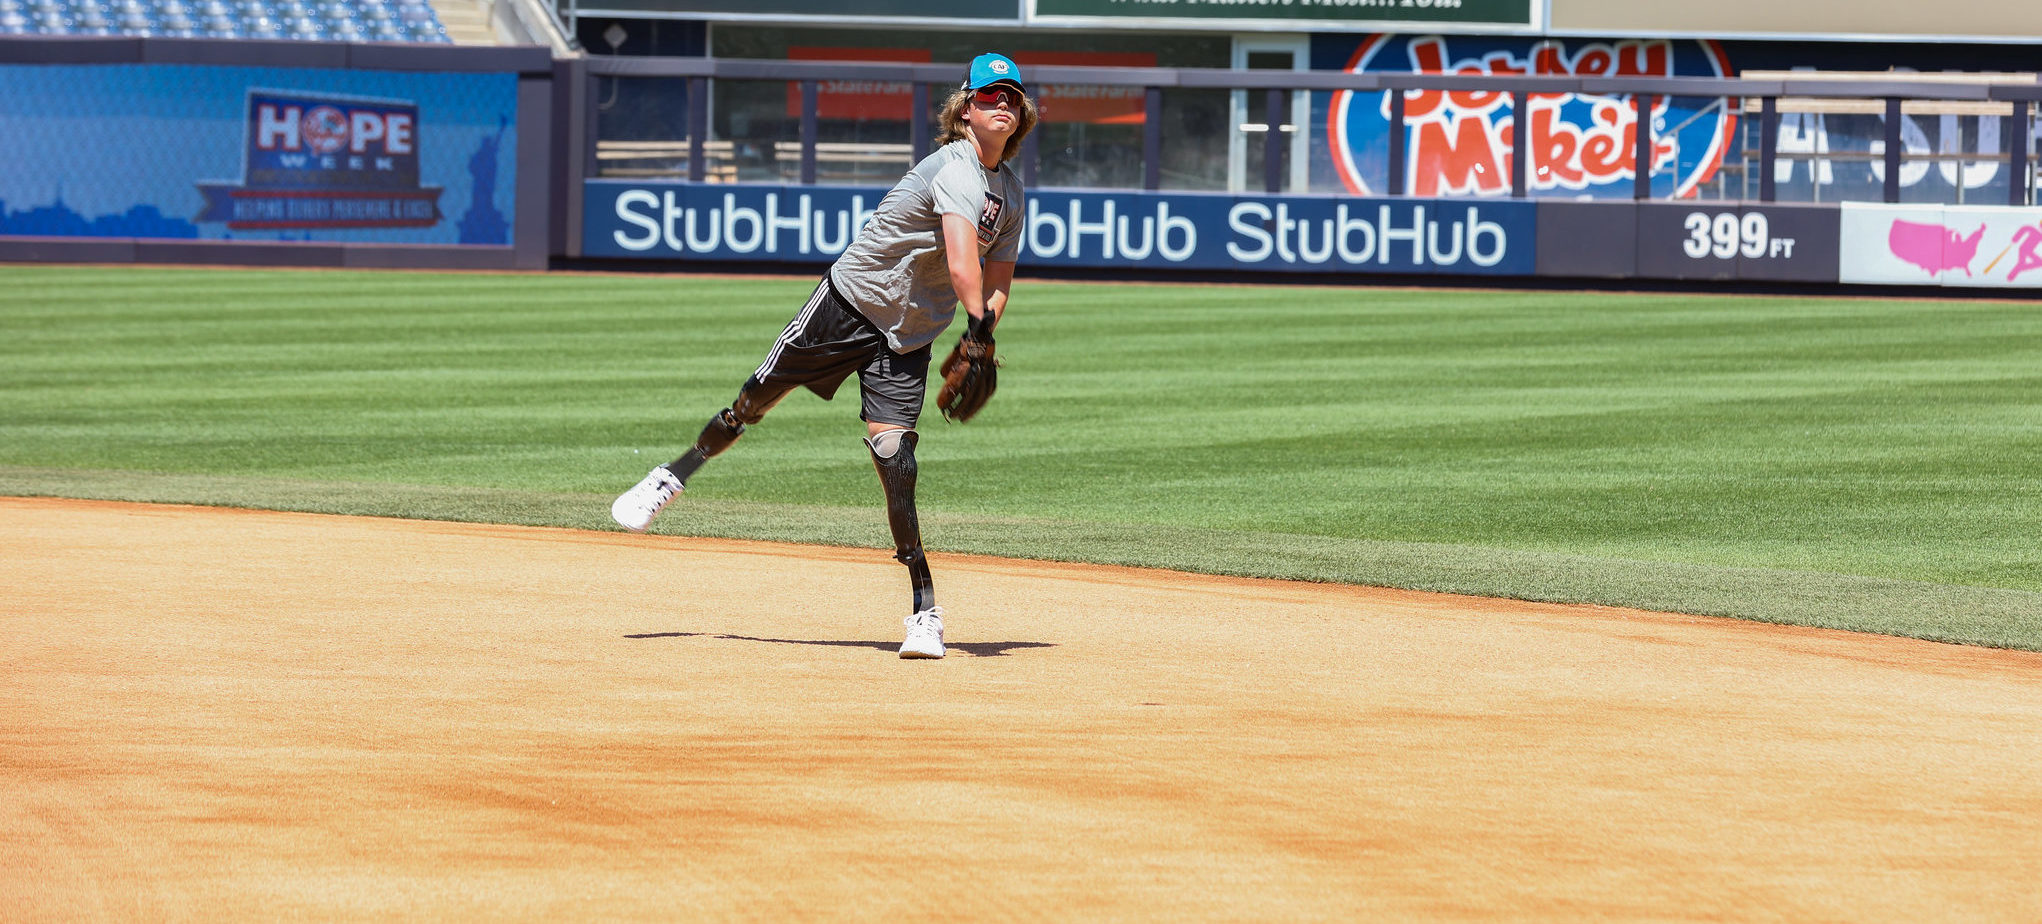 Landis Sims throwing a pitch at Yankee Stadium